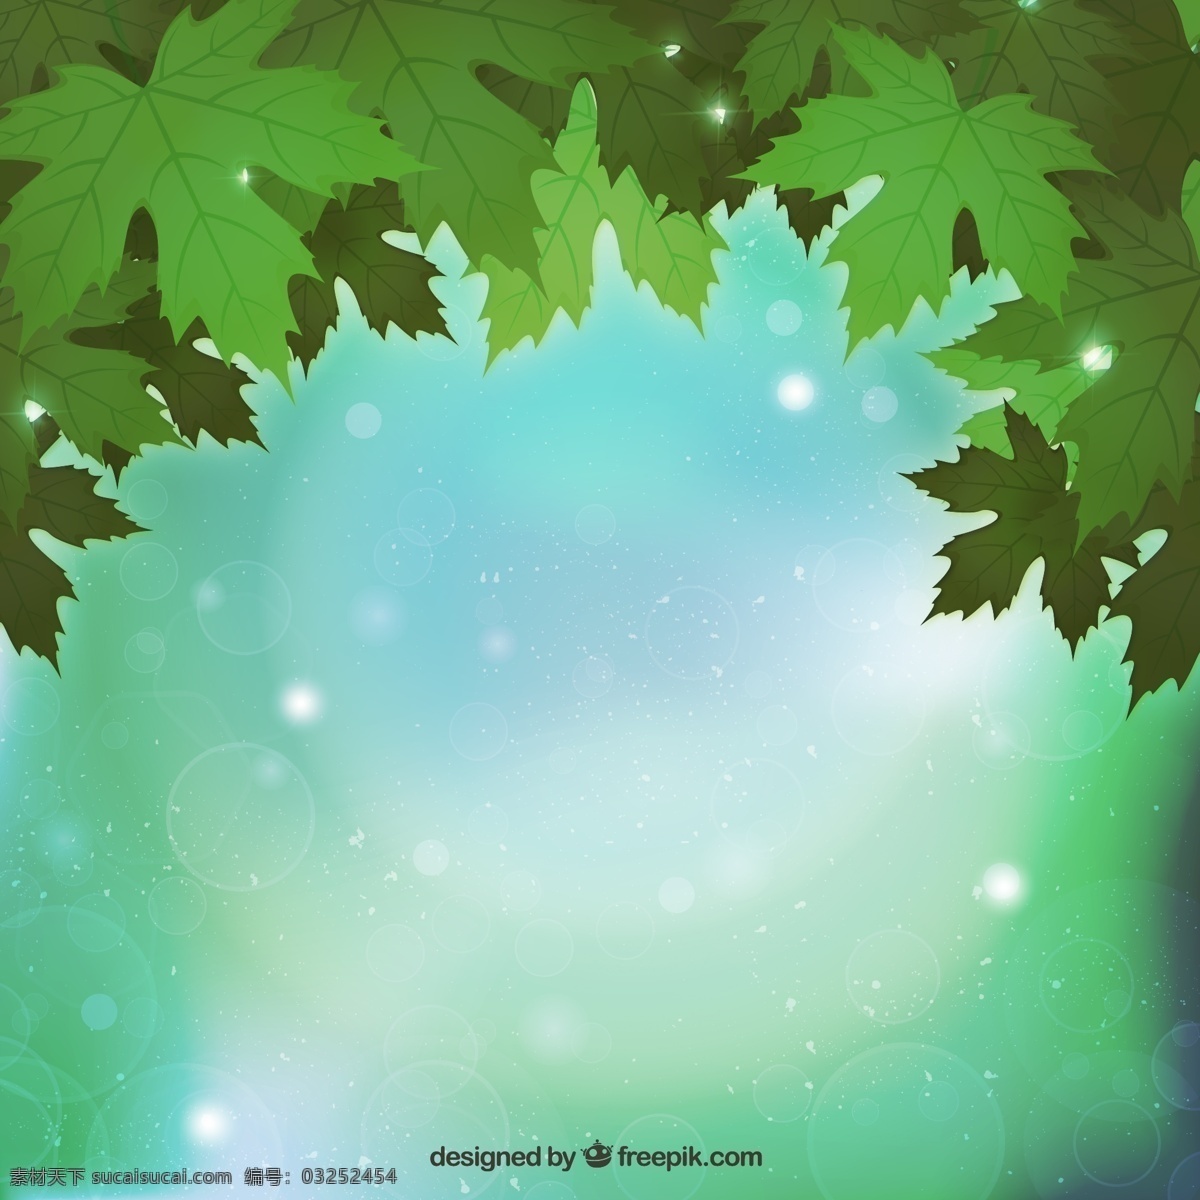 绿色 枫叶 树叶 叶子 绿叶 植物 光晕 星光 光效 梦幻 装饰 卡片 插画 背景 海报 画册 矢量植物 生物世界 树木树叶 平面素材